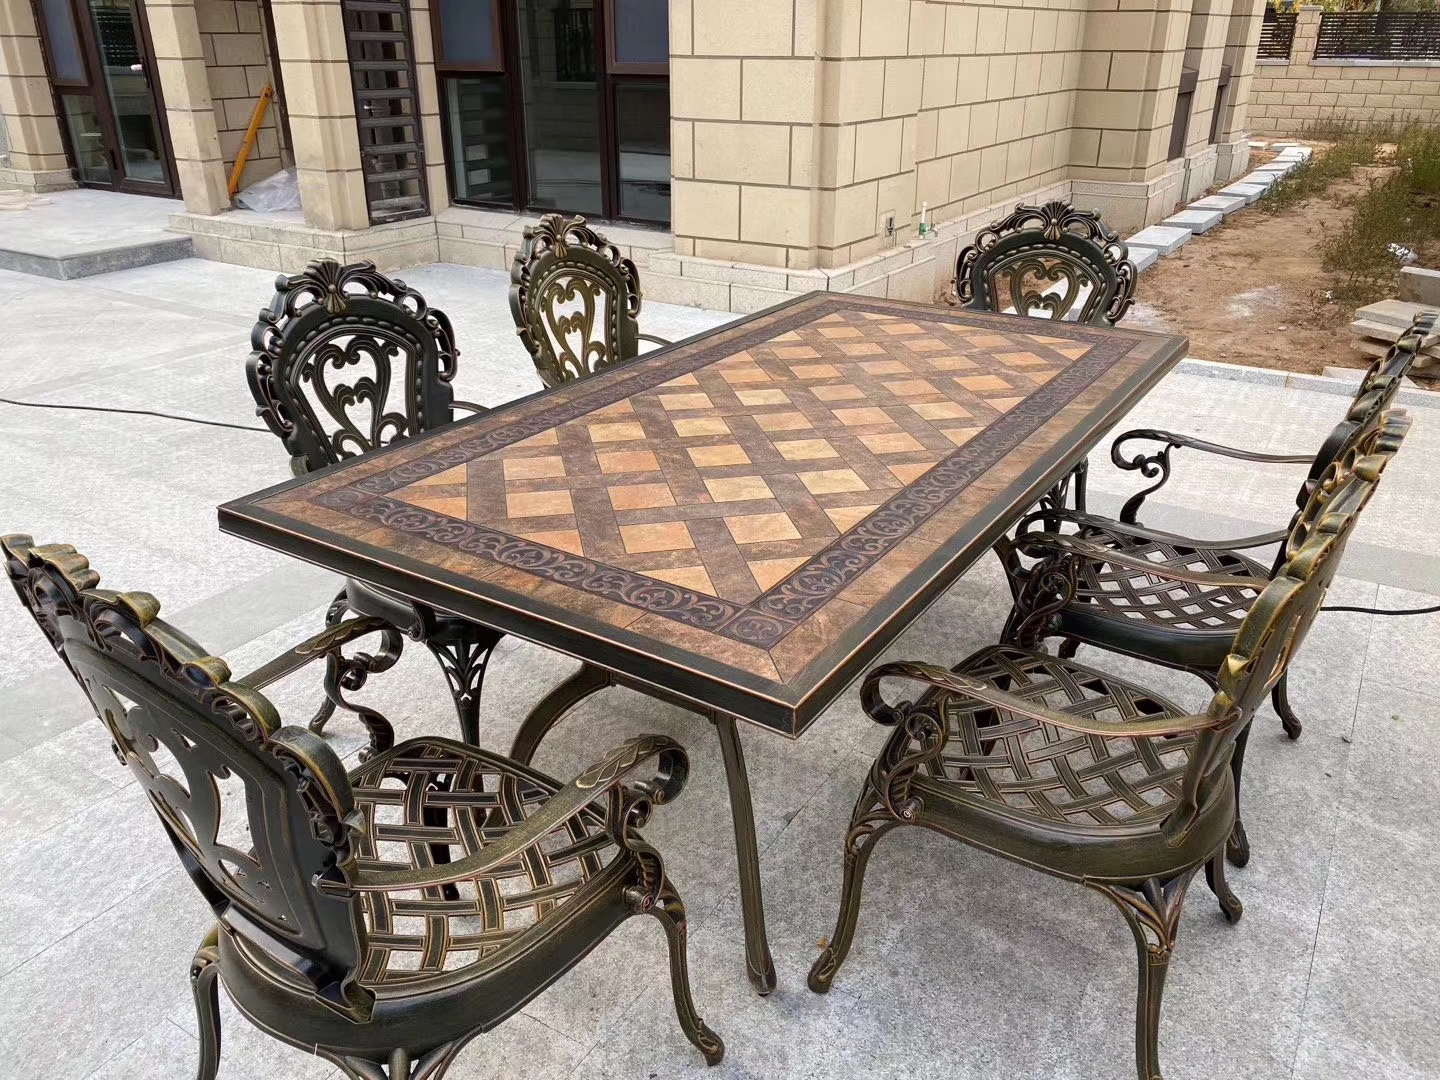 Садовый обеденный стол из металла с мозаикой, стол для уличных кафе на 8 персон, мебель для летних веранд ресторанов, чугунный стол в столовую, кованая садовая мебель из литого алюминия.